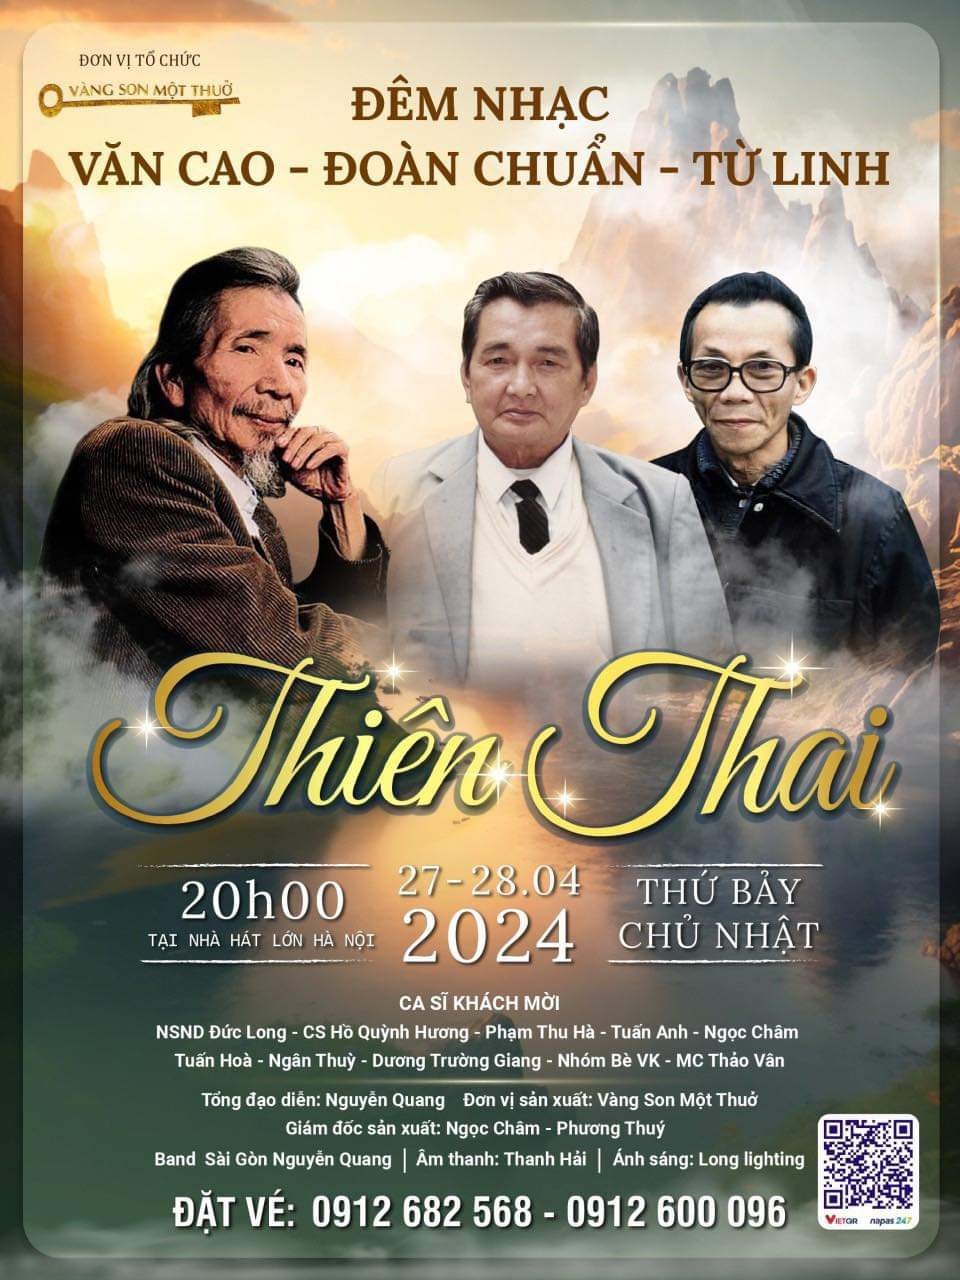 Đêm nhạc “Thiên Thai” sẽ diễn ra tối 27/4 tại Nhà hát Lớn Hà Nội